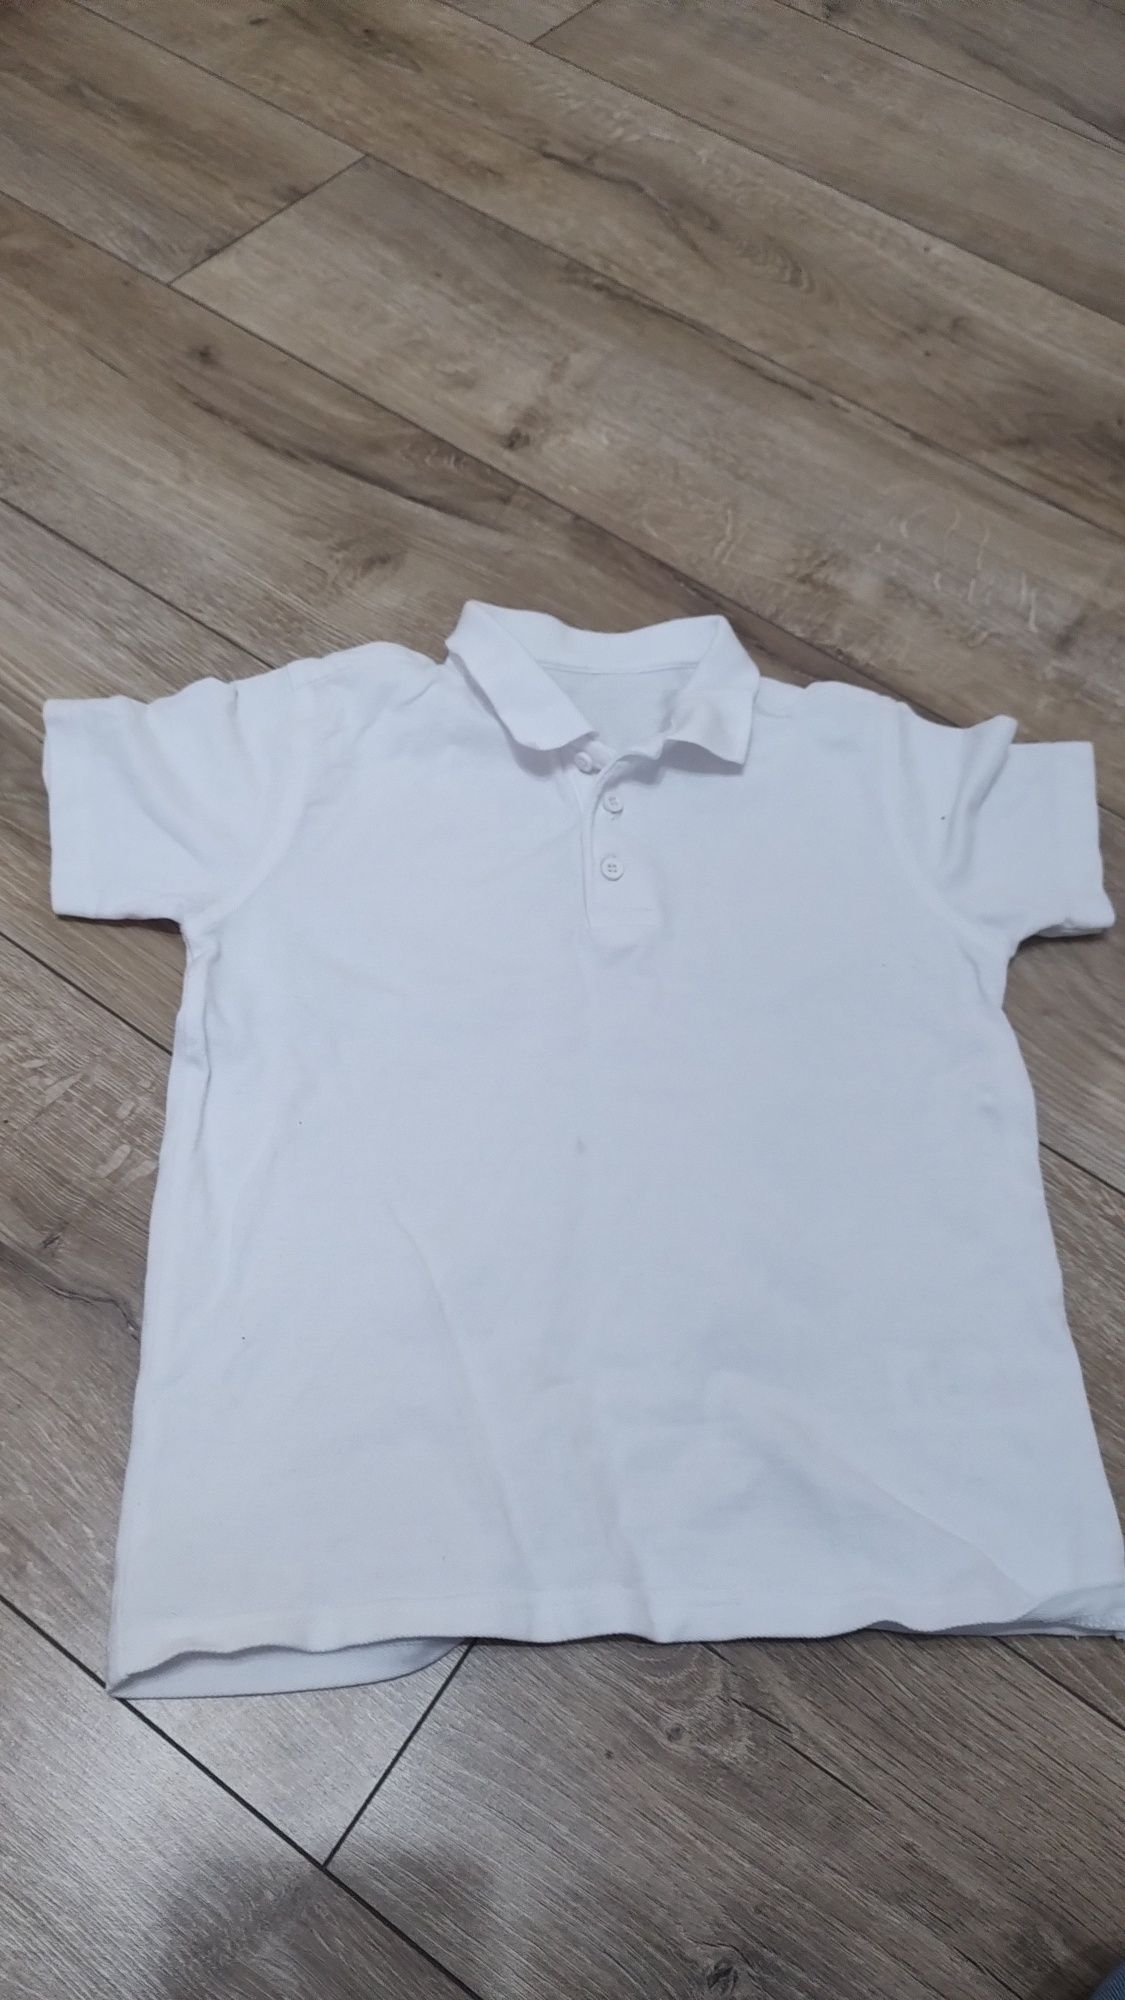 Sprzedam białą koszulkę polo 116/122